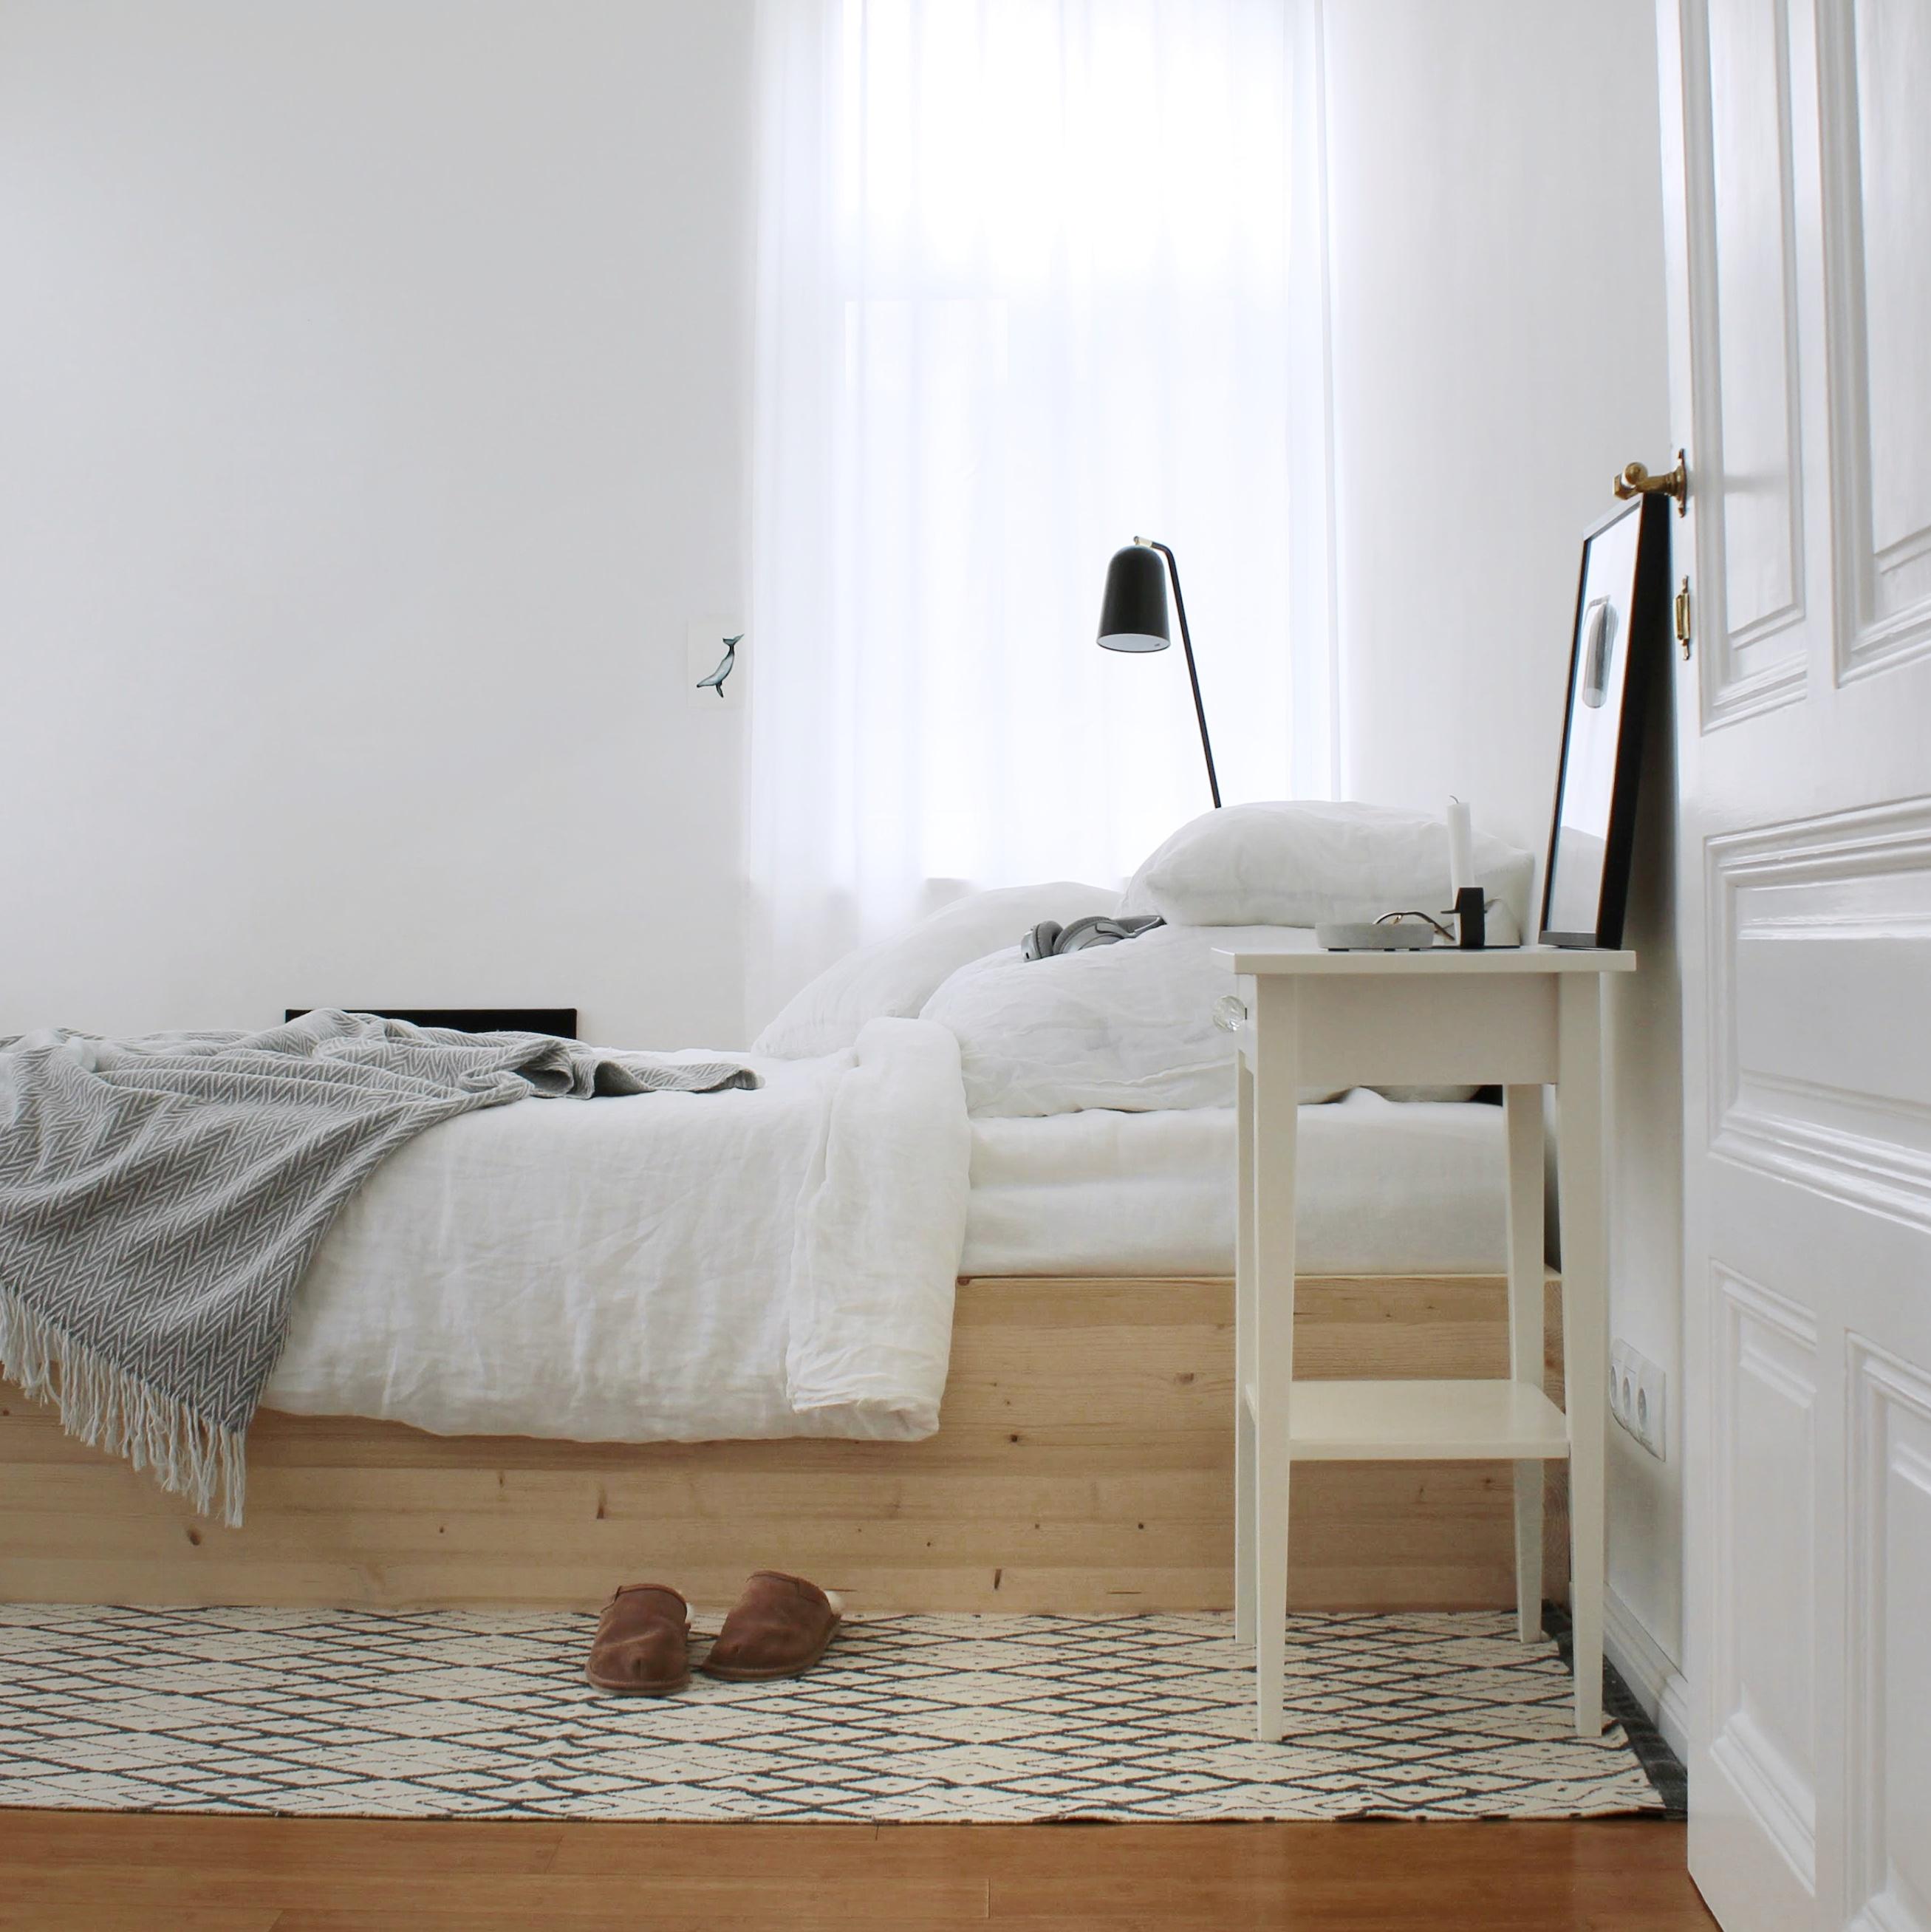 Schlafzimmer 2.0 #weiss #skandinavisch #interior #schlafzimmer #altbau #diy